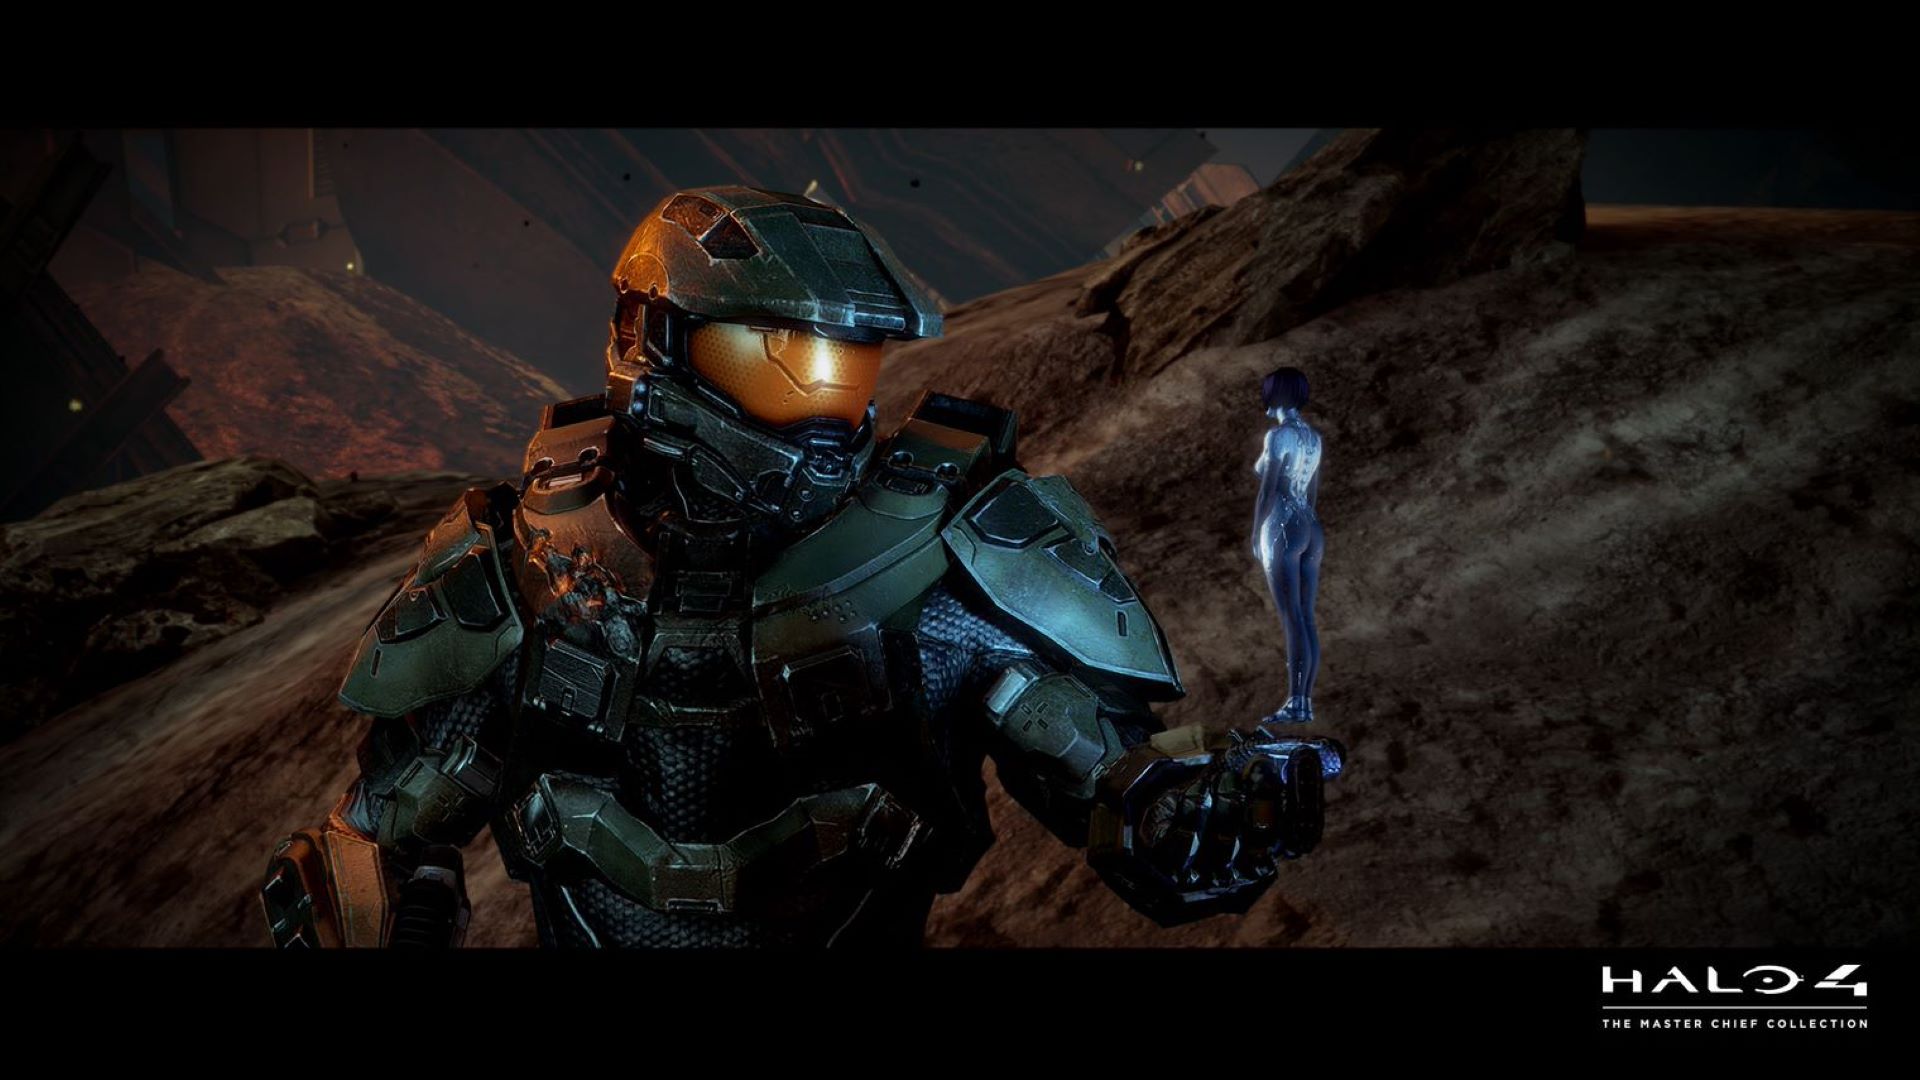 Die Reise geht weiter: Halo 4 in The Master Chief Collection optimiert für Xbox Series X|S HERO